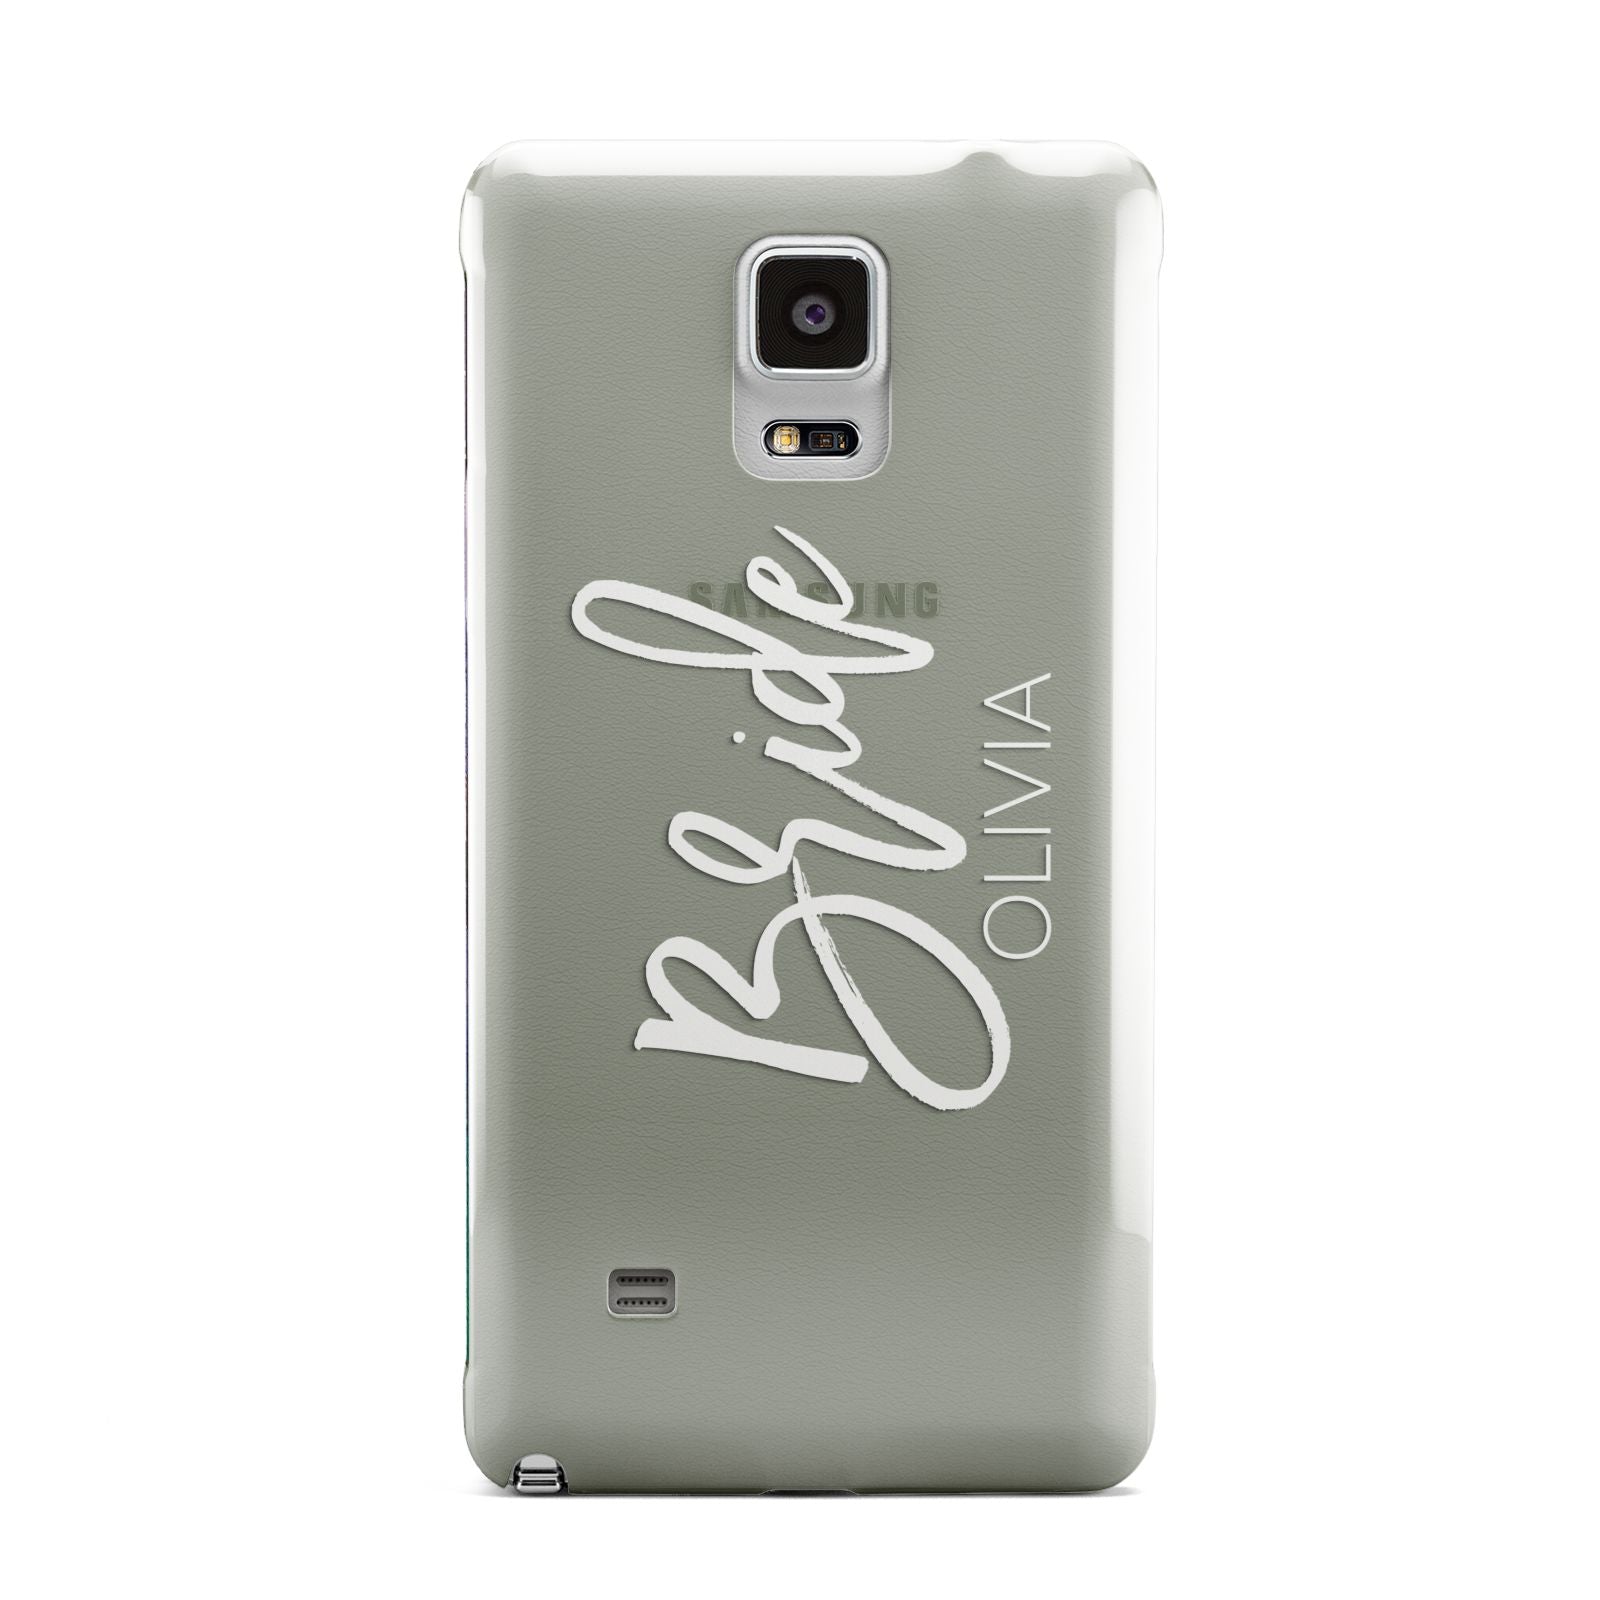 Personalised Bride Samsung Galaxy Note 4 Case